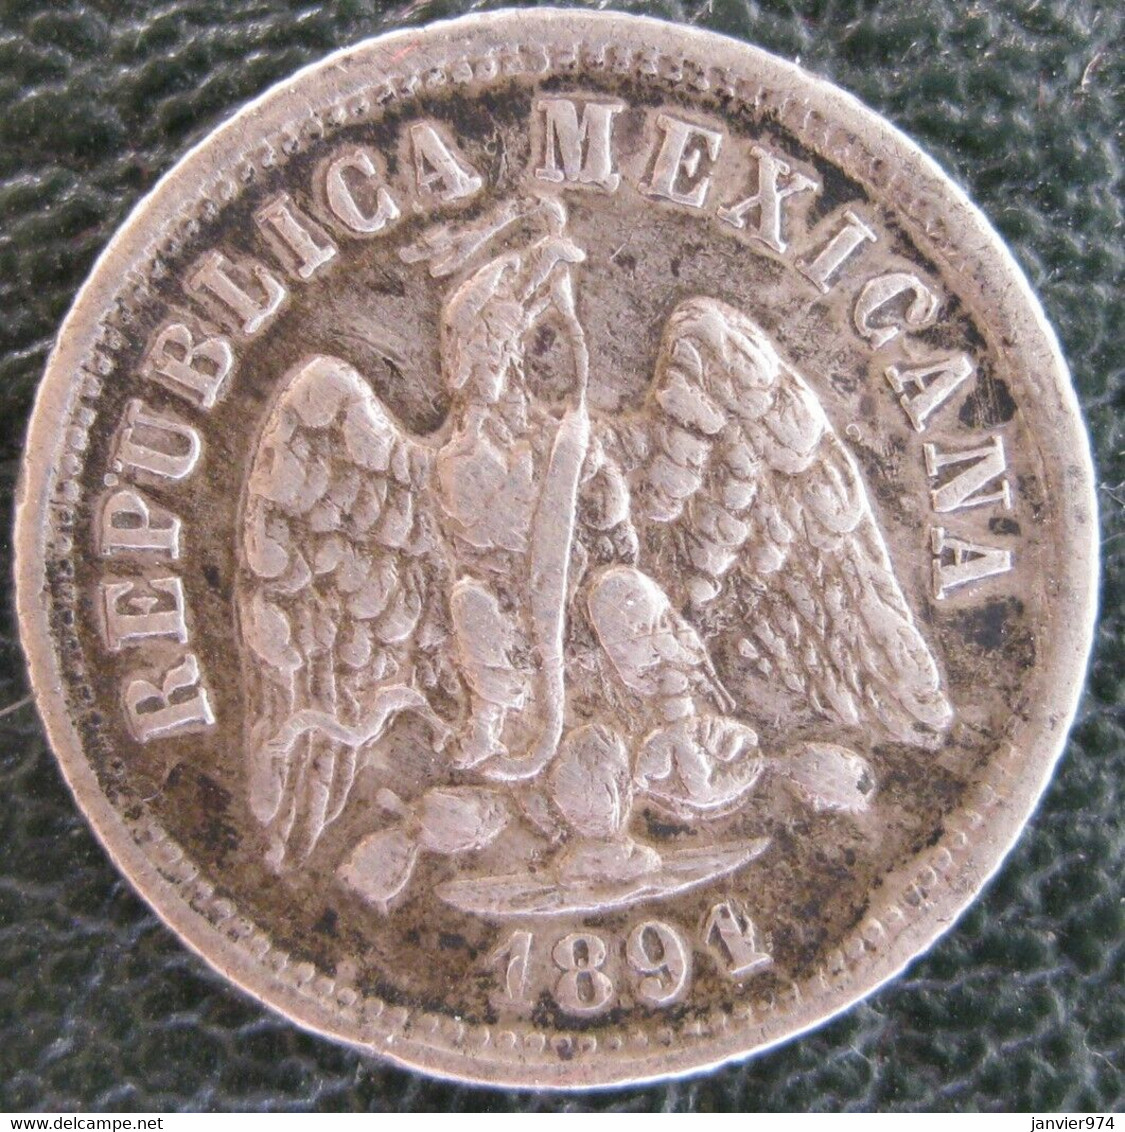 Variété Over Date,  10 Centavos 1891 (1 Sur 0) . Zs Zacatecas . Argent. Rare - Mexique